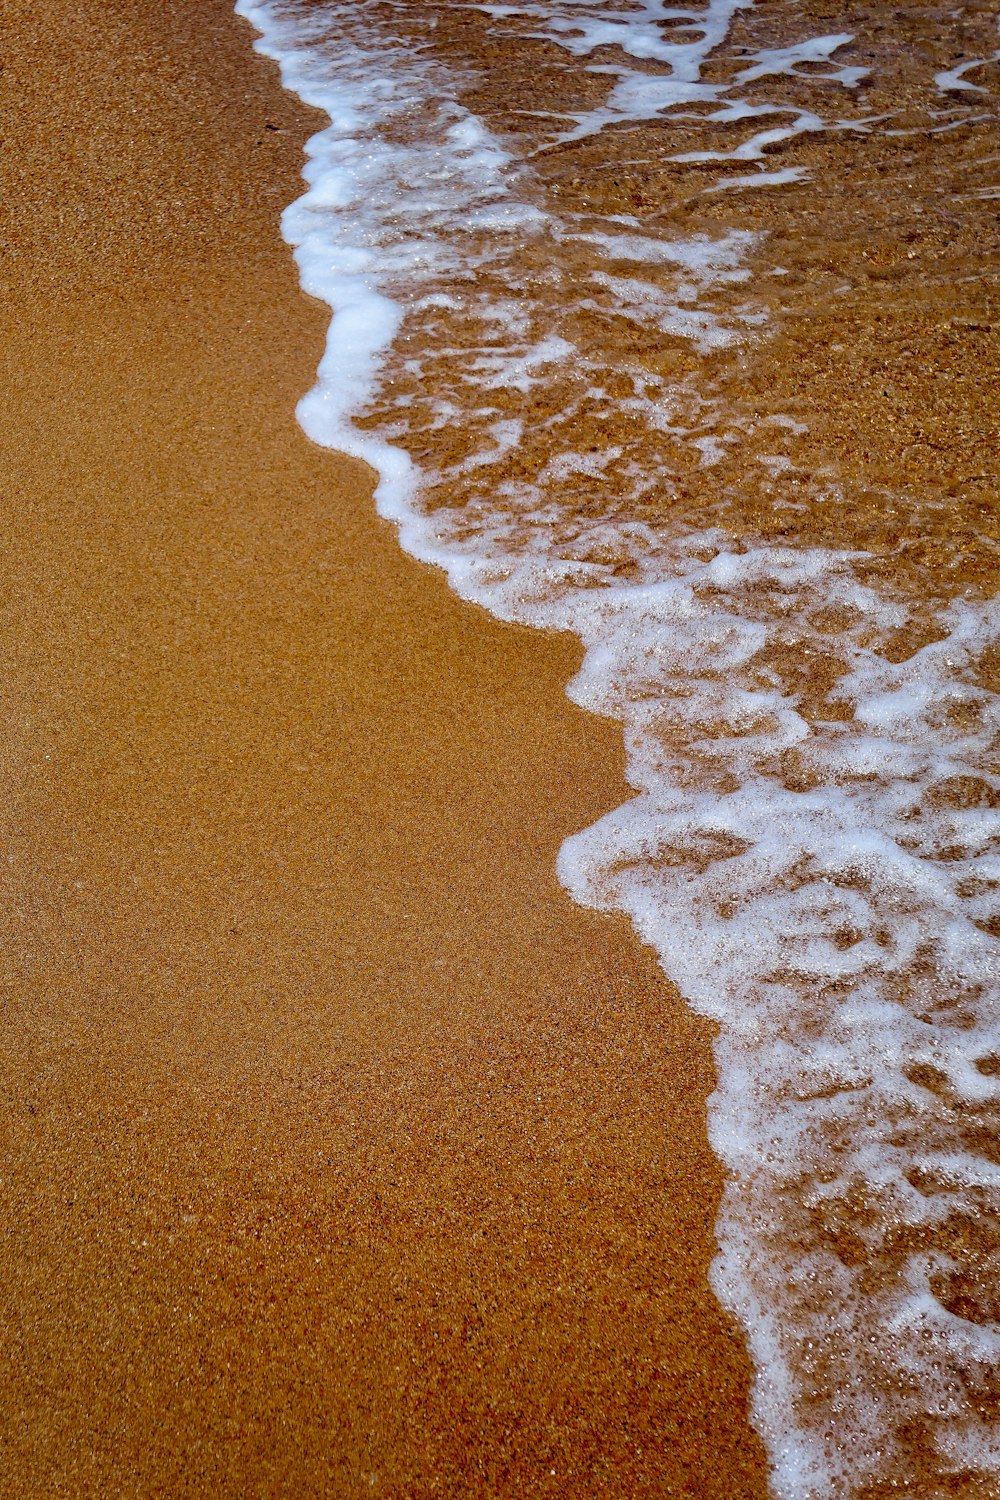 espuma de mar blanca en playa de arena marrón